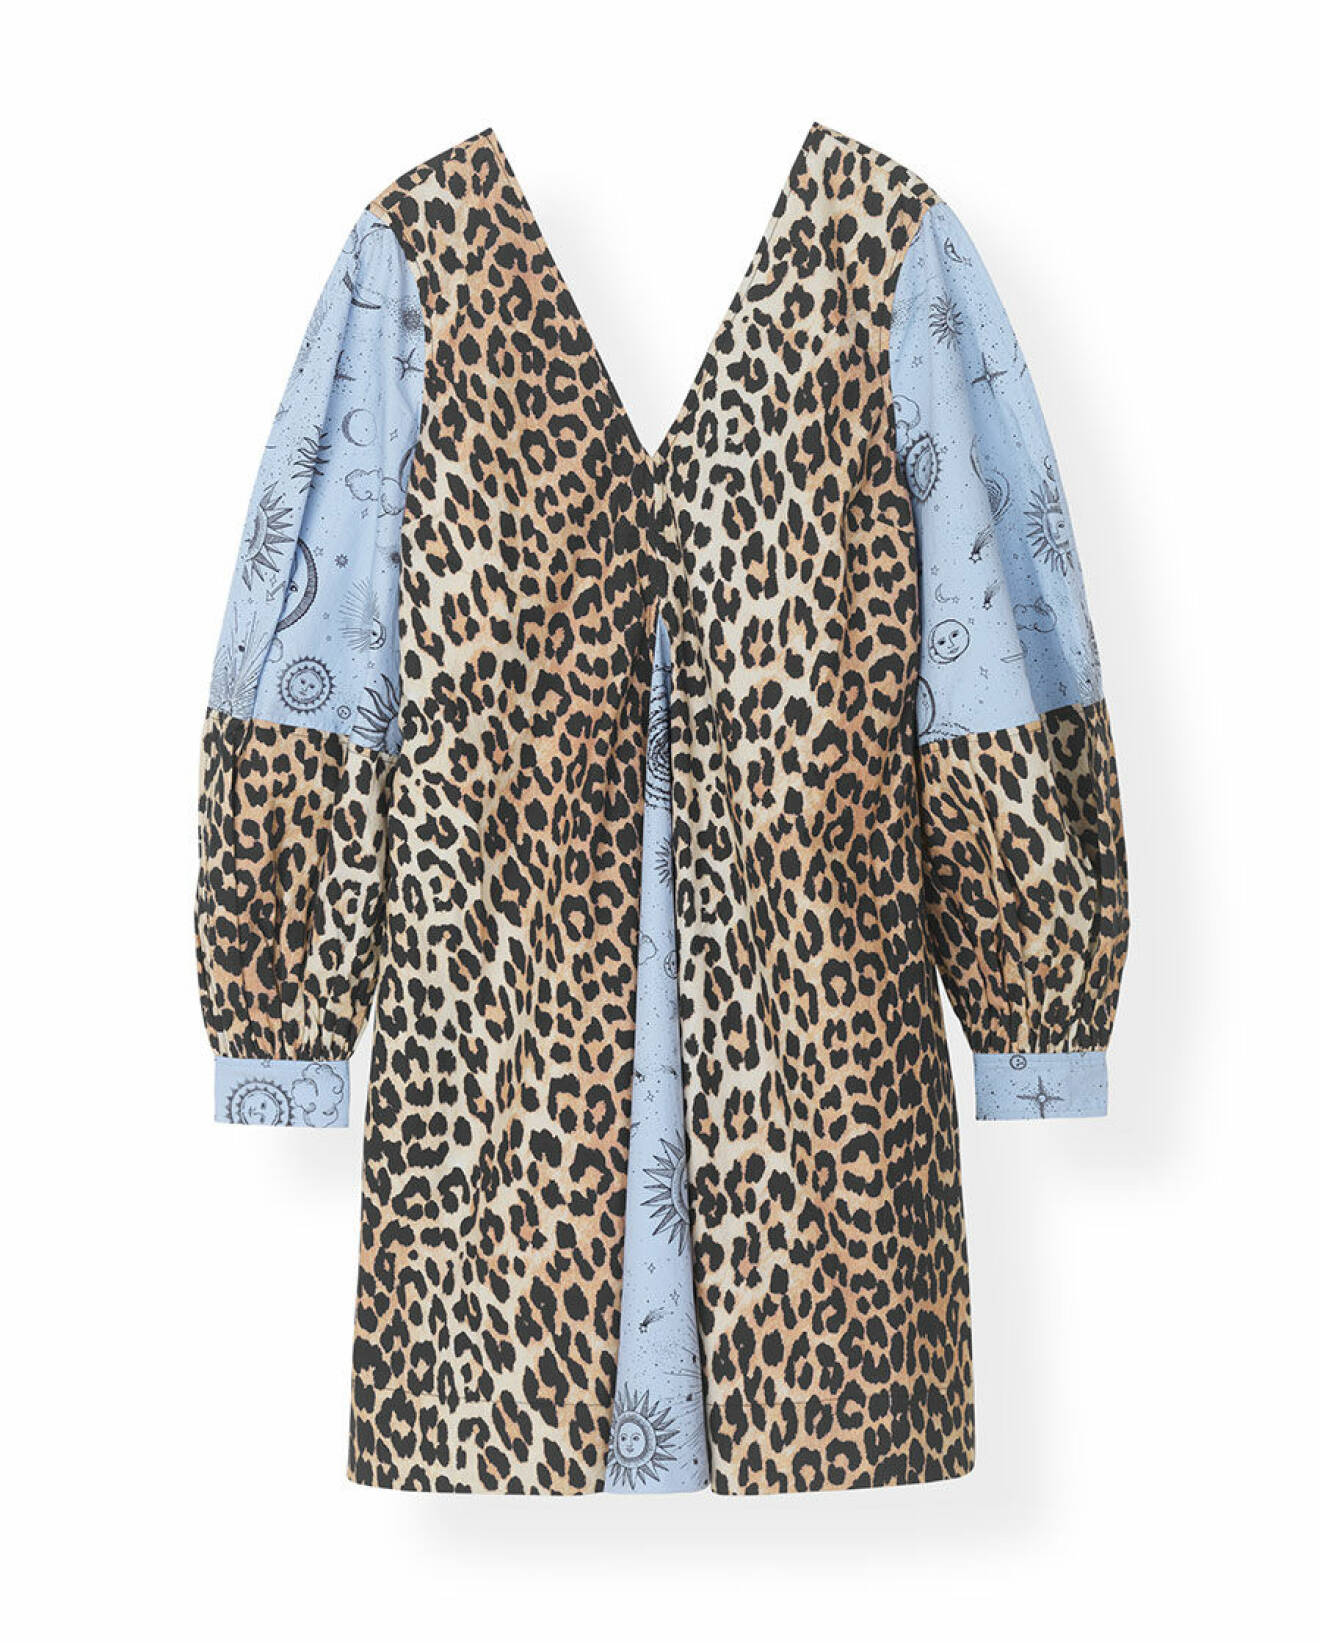 Klänning med mönstermix av leopard och ljusblått astro-mönster. Shoppa den här!